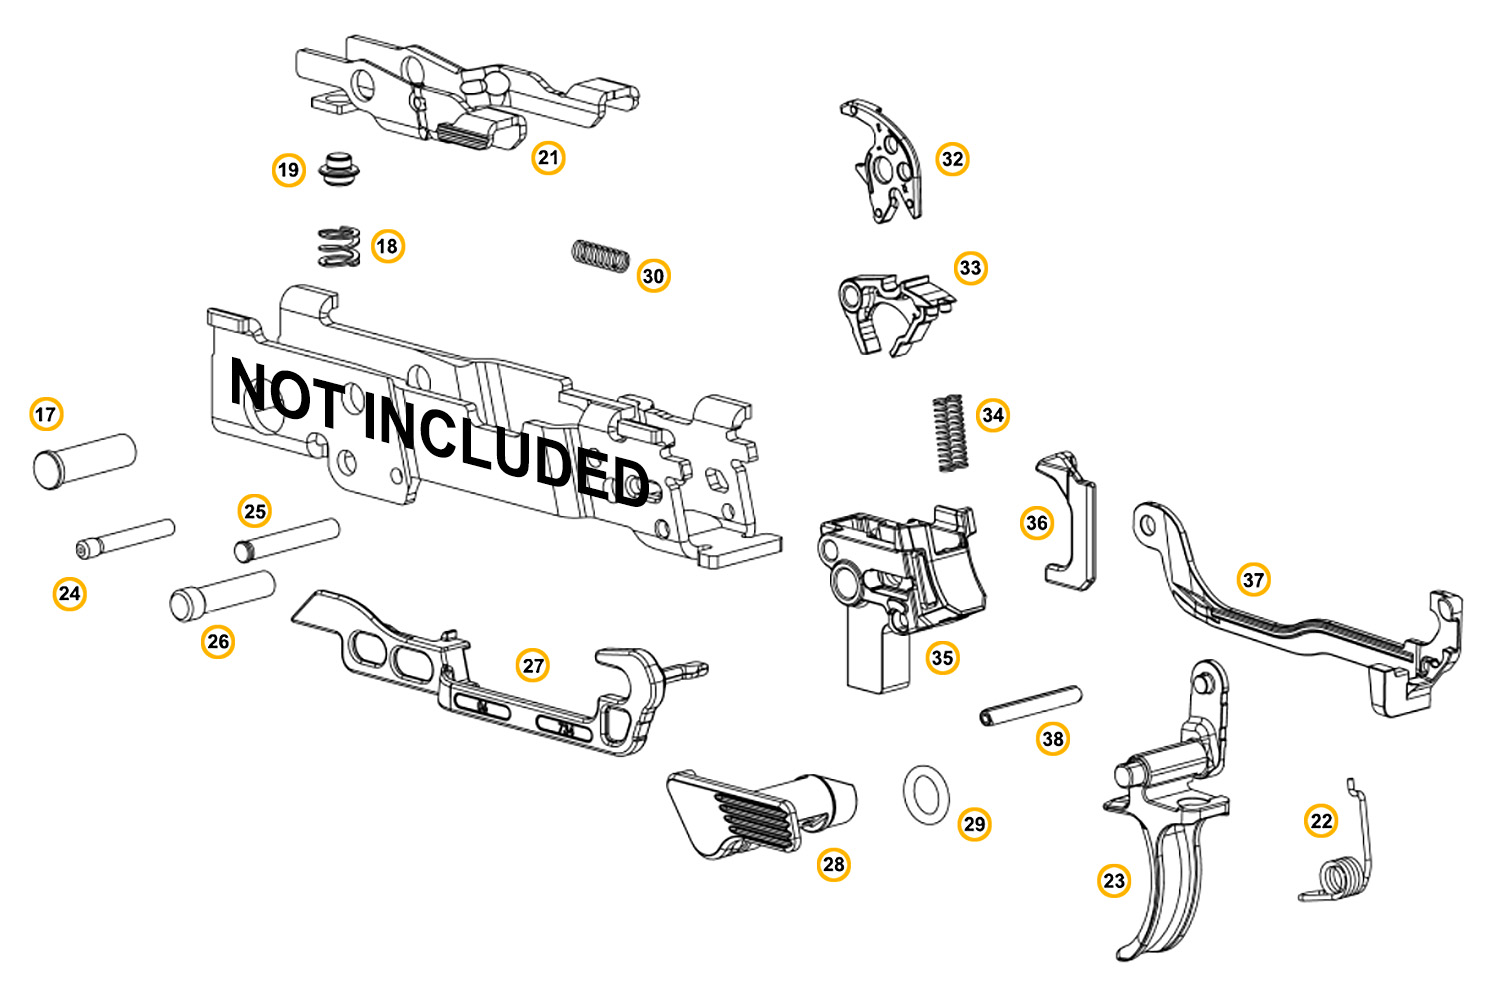 Lower Parts Kit fits SIG Sauer P320 Fire Control Unit (FCU) Gun Parts